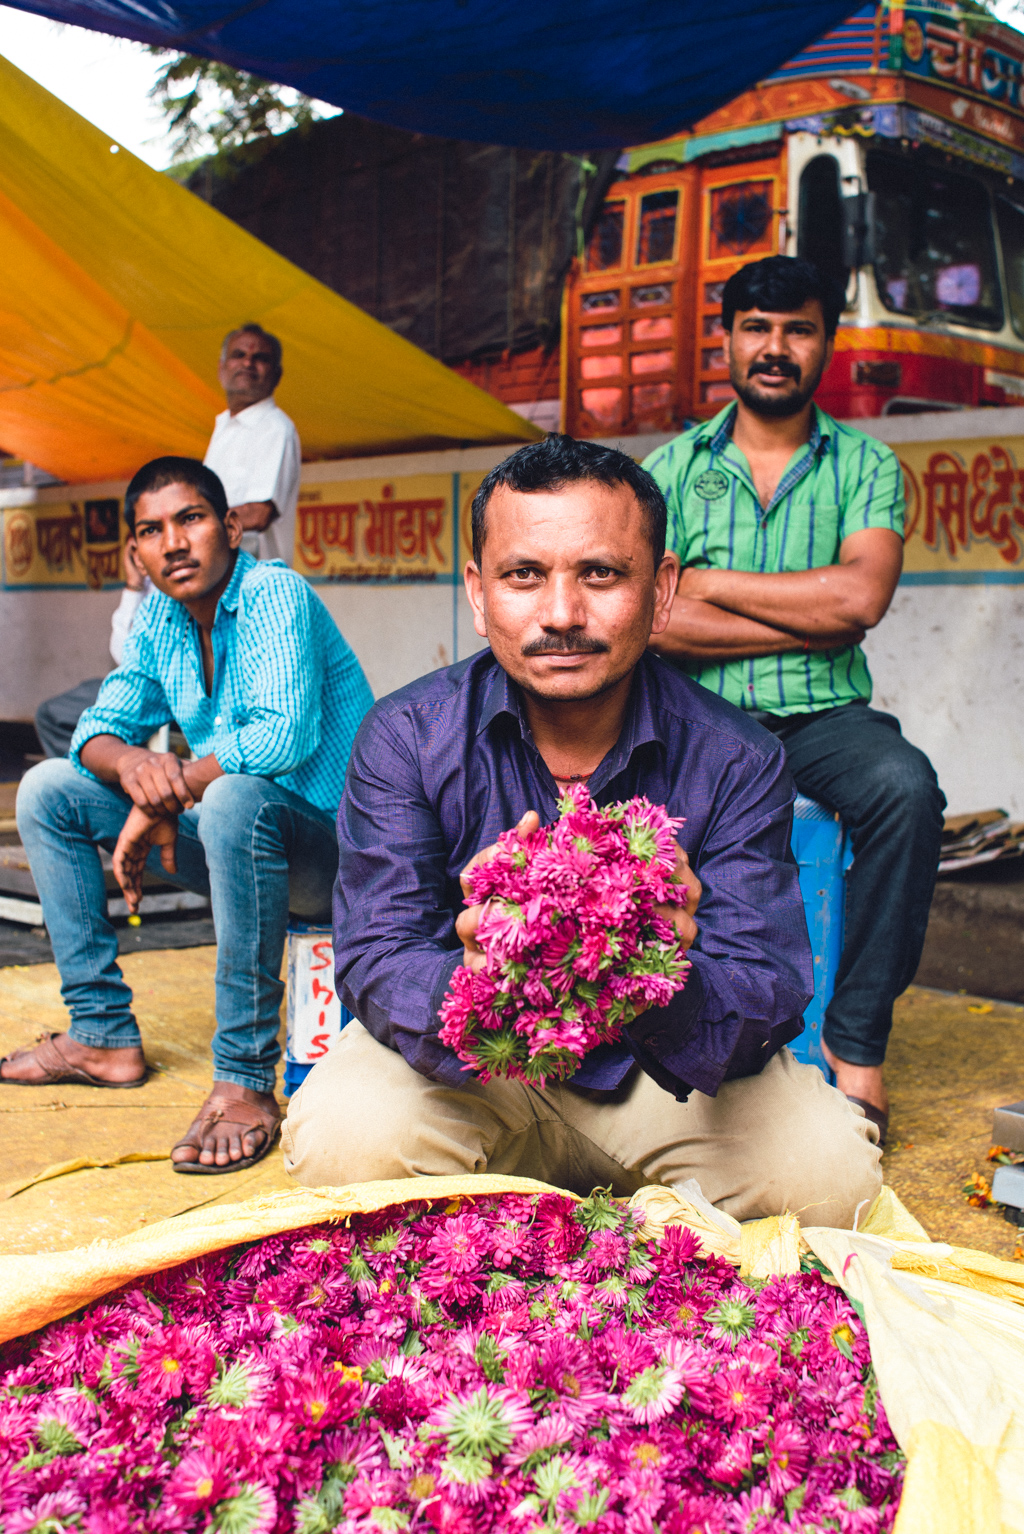 Blumenverkäufer in Pune, Indien